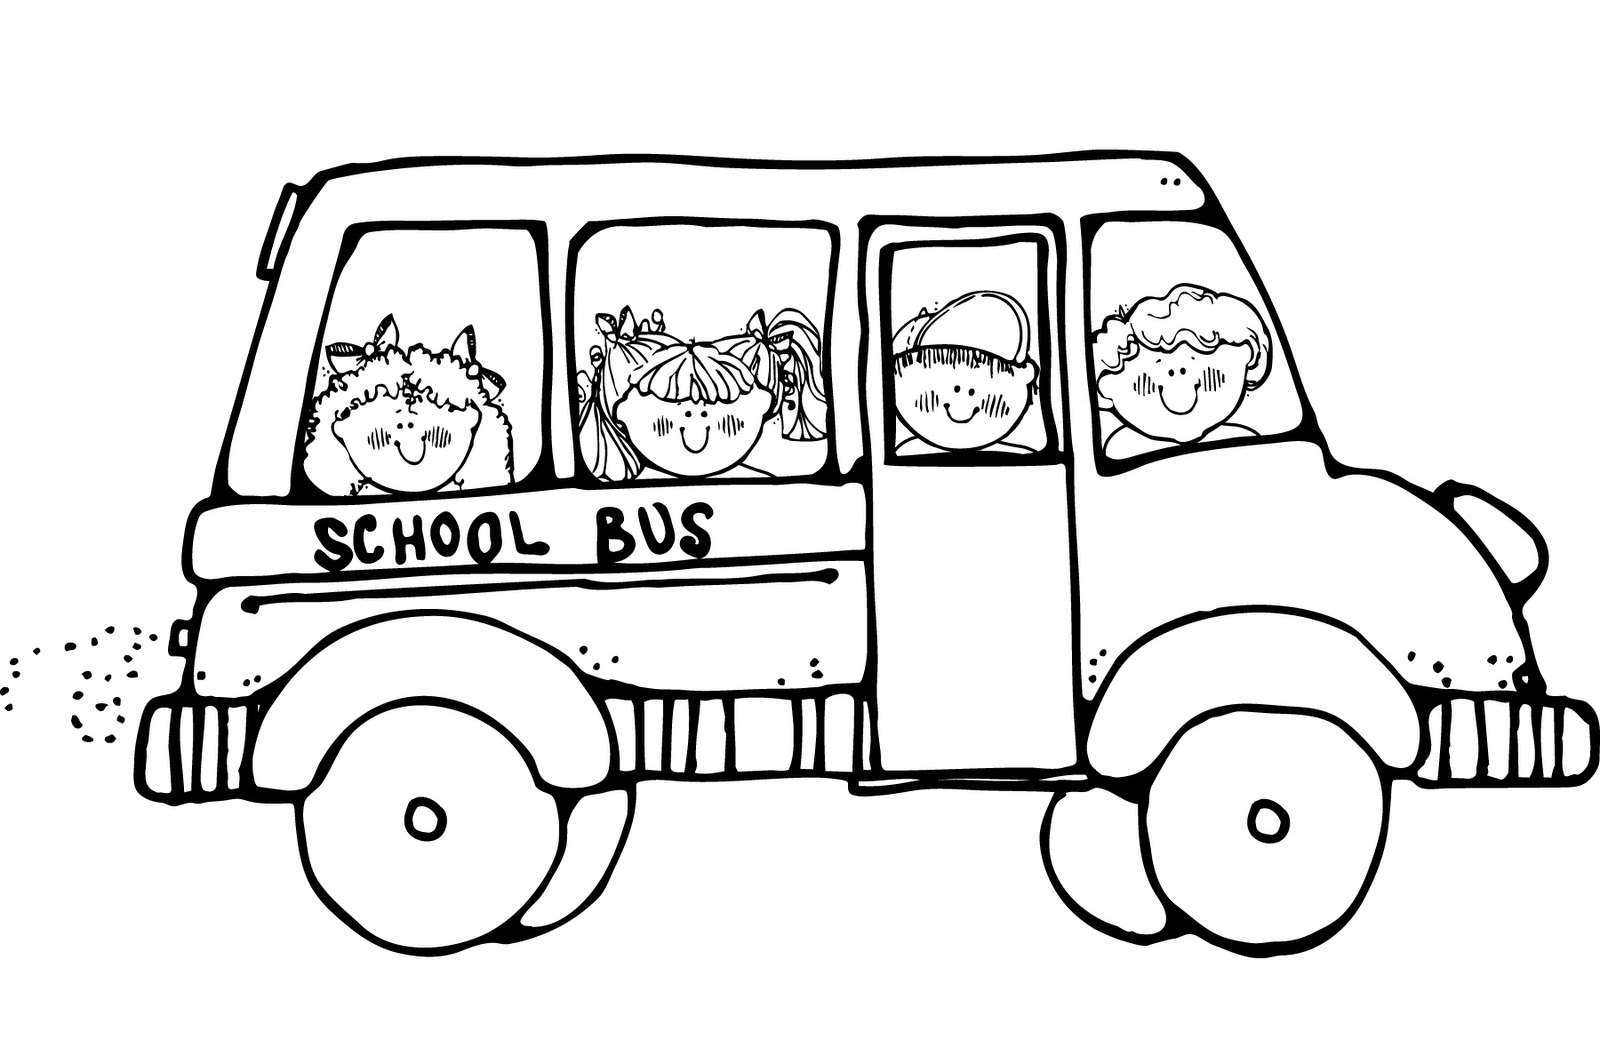 school bus coloring page preschool